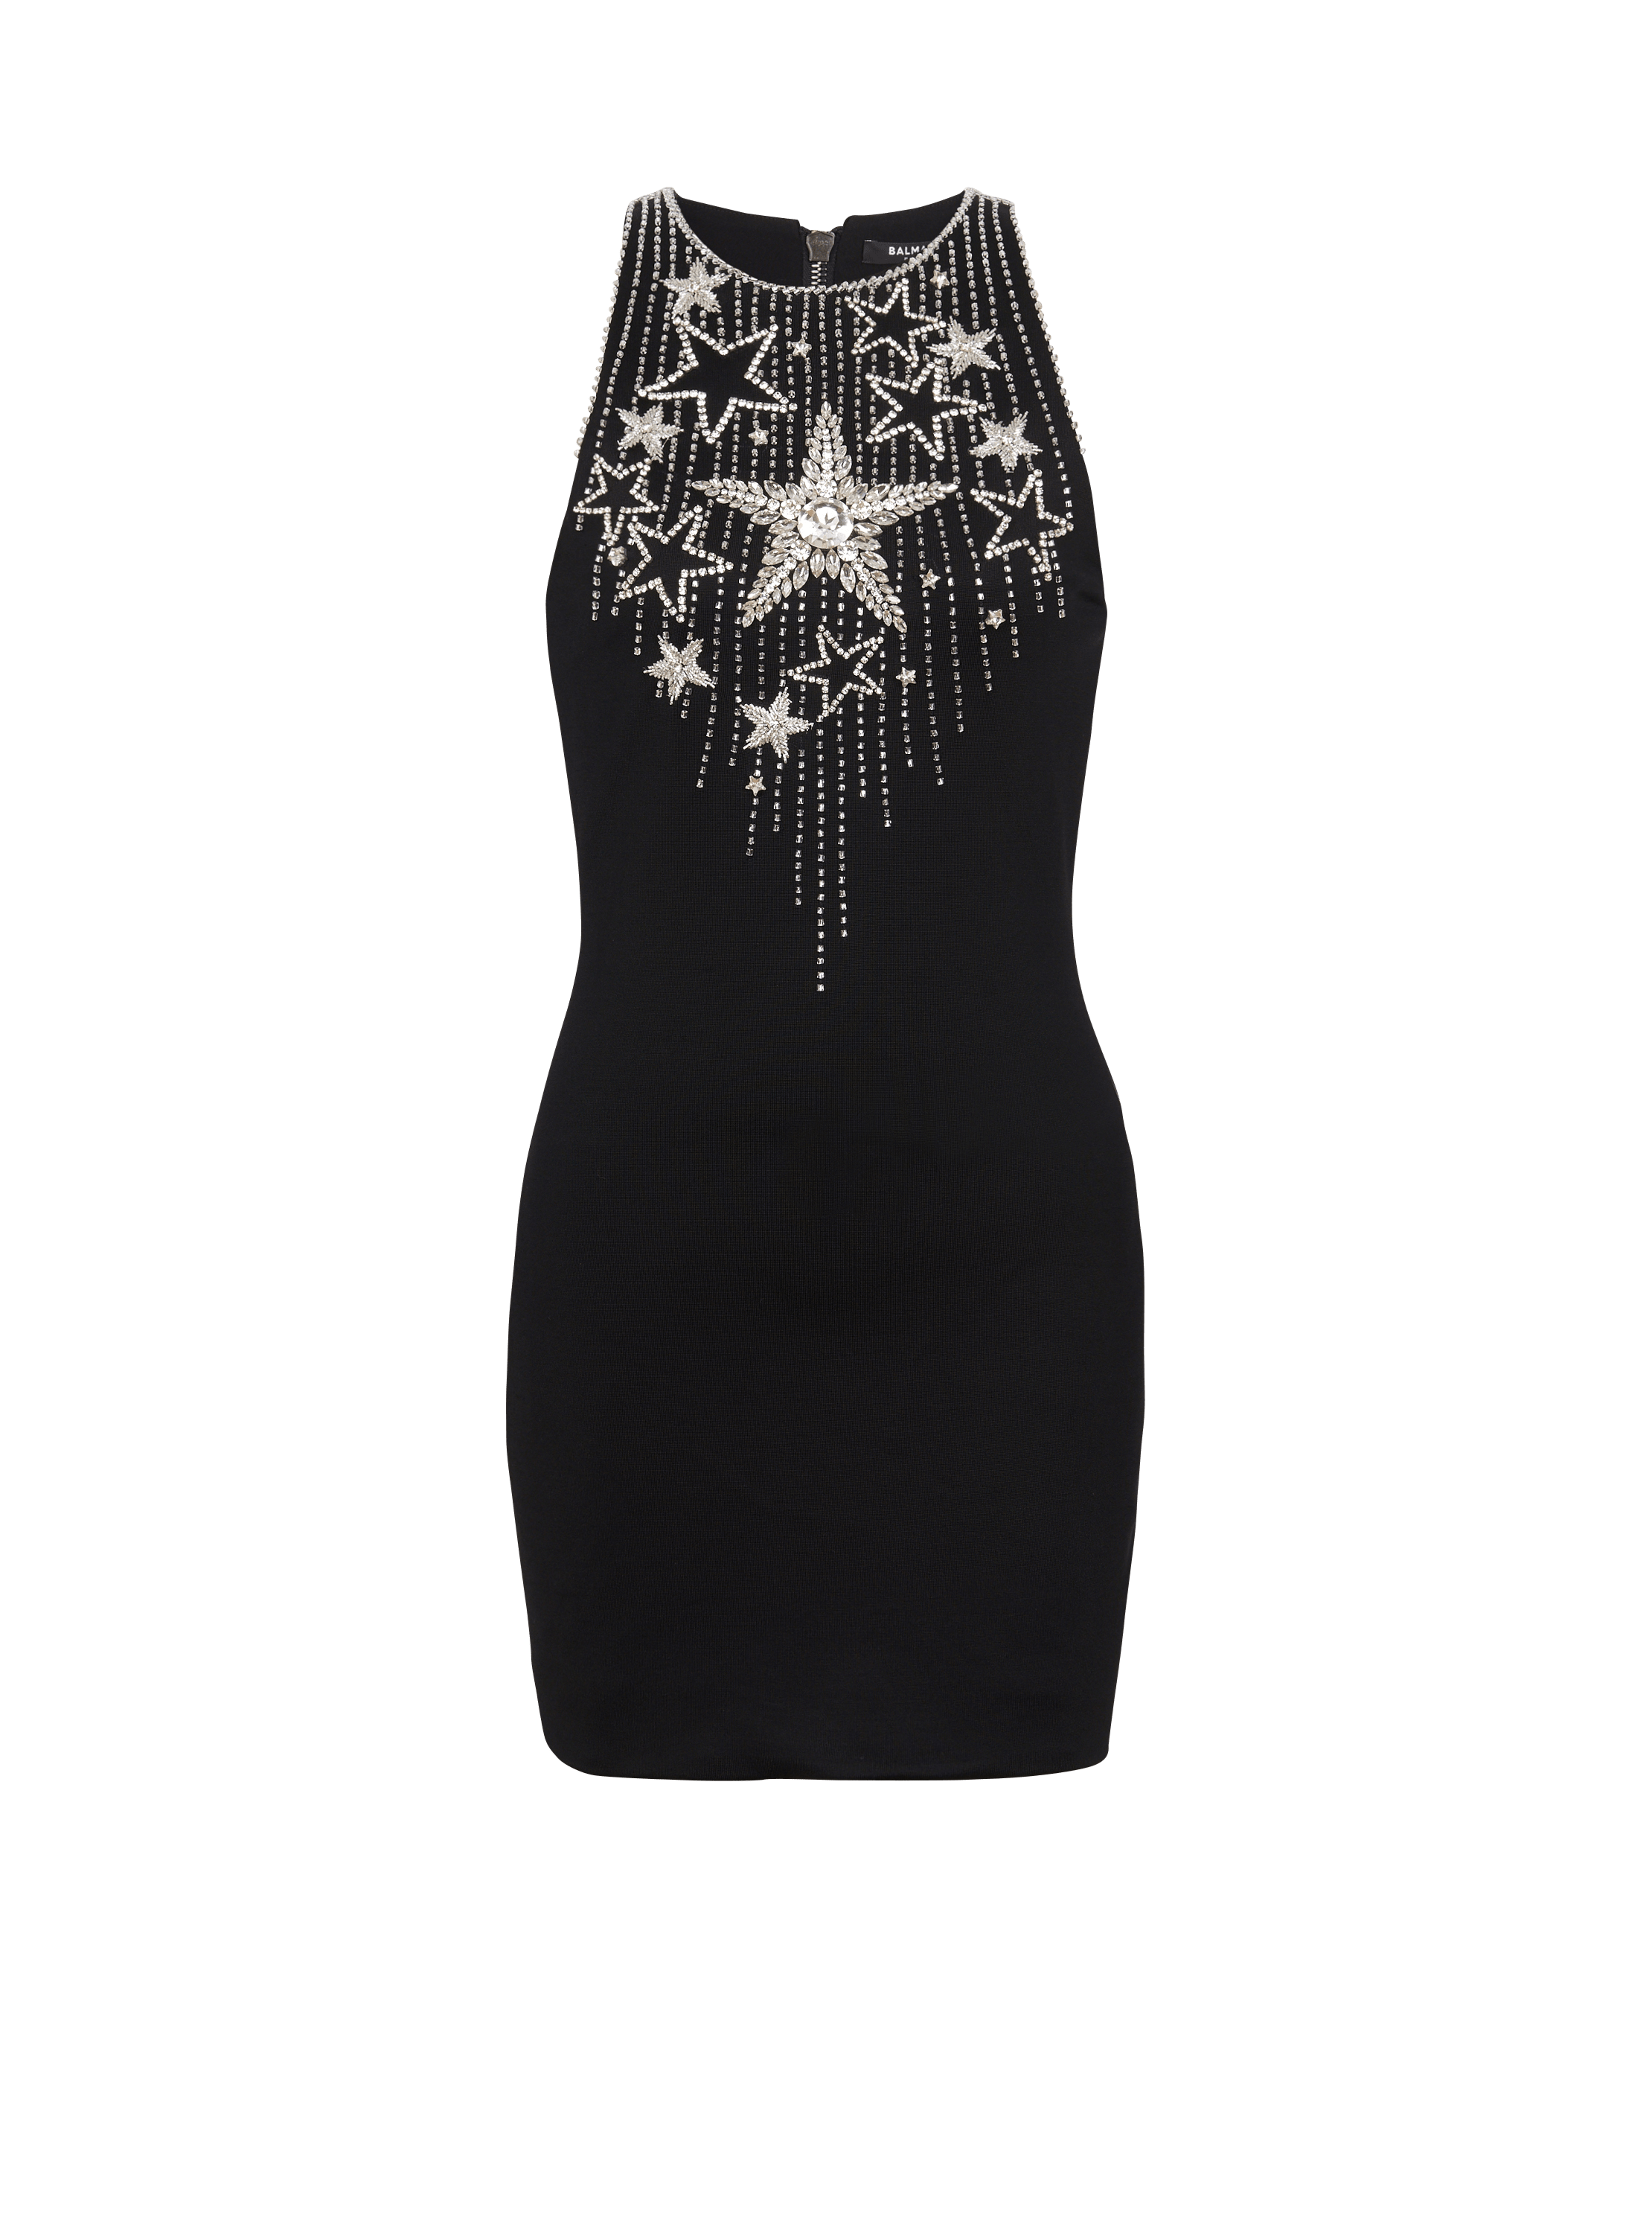 Stars embroidered short dress, black, hi-res